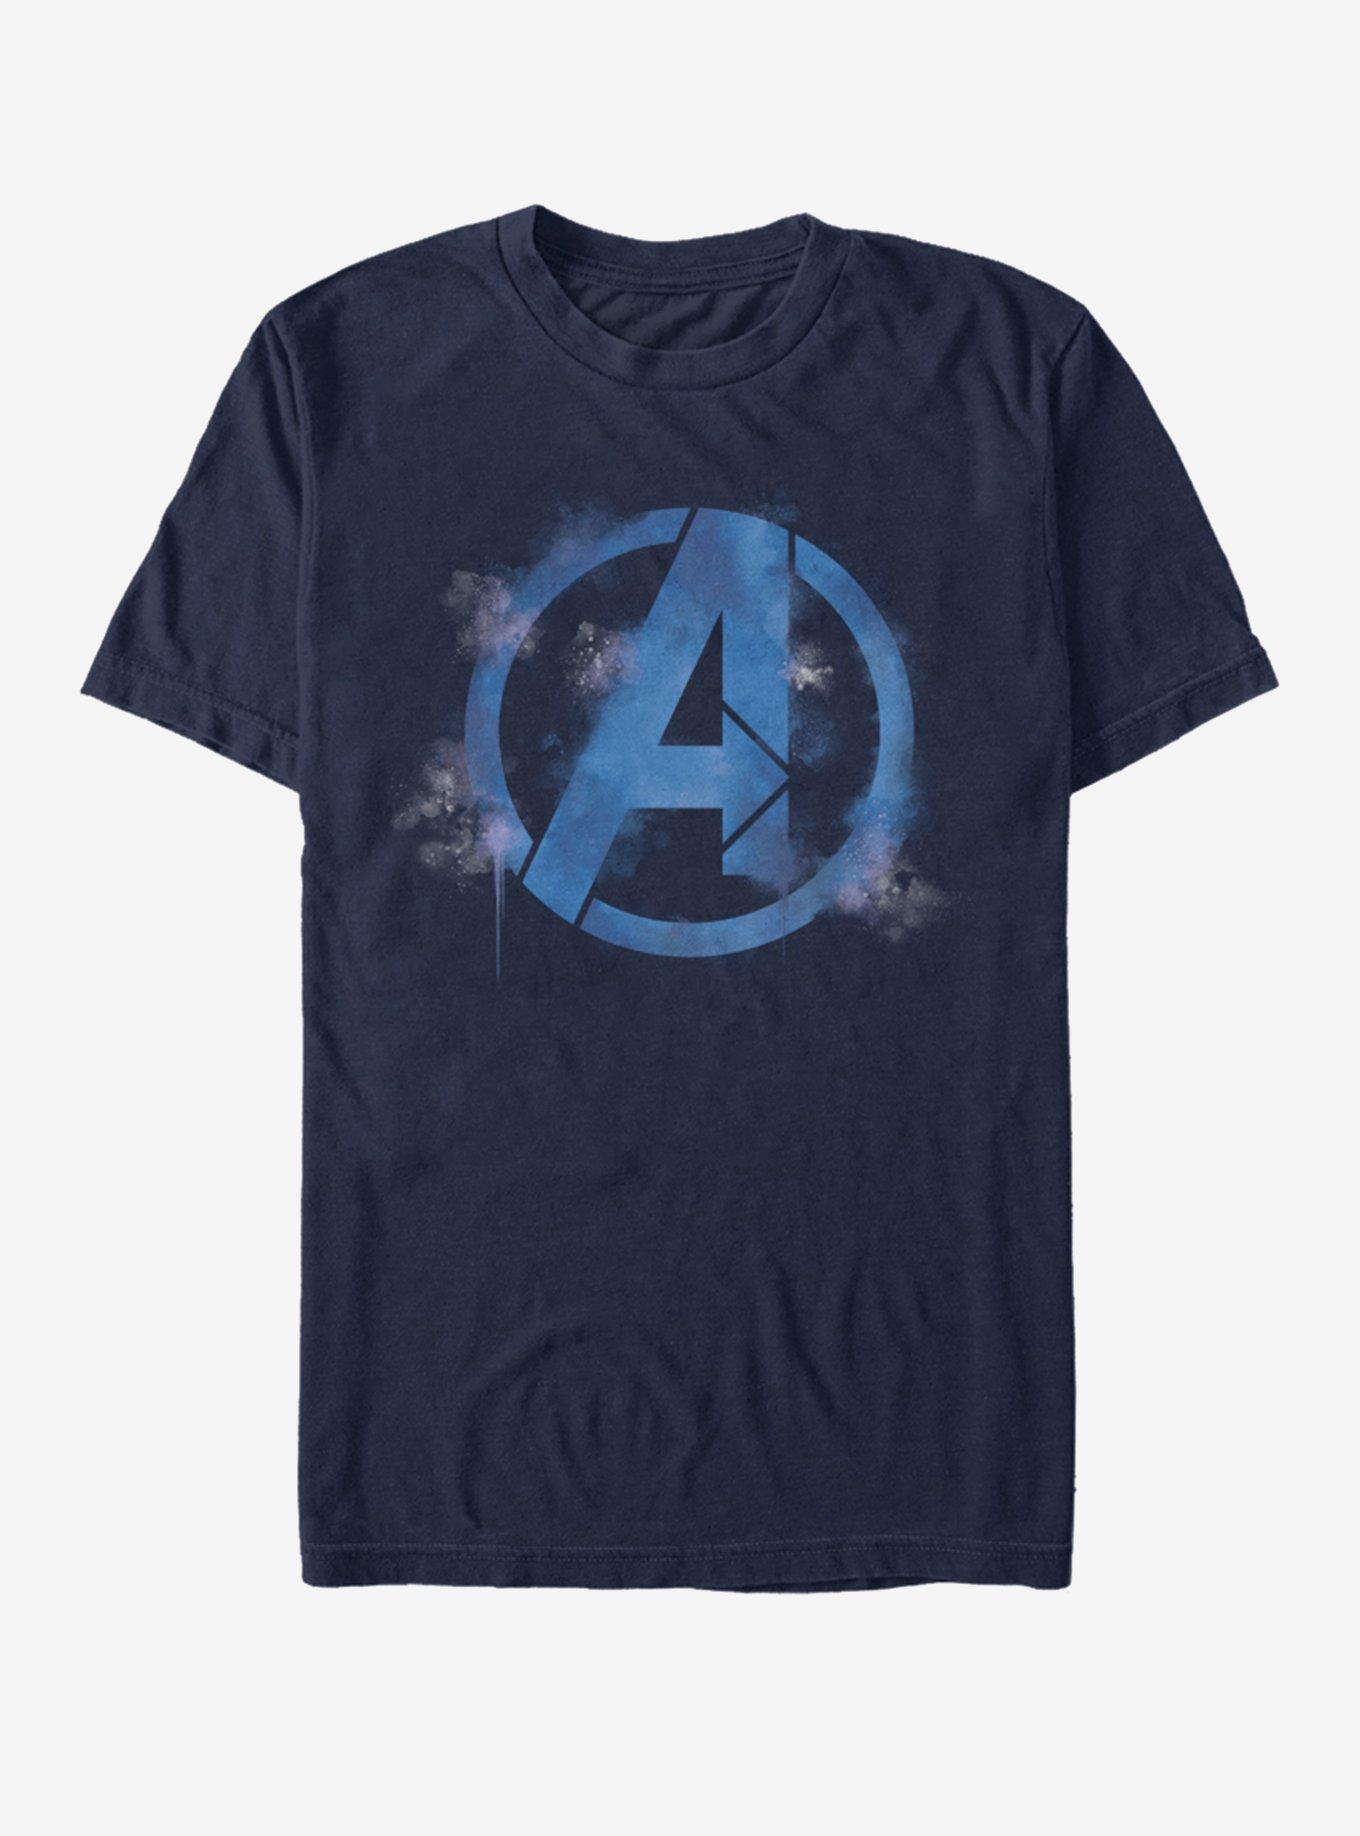 Marvel Avengers: Endgame Avengers Spray Logo T-Shirt, NAVY, hi-res